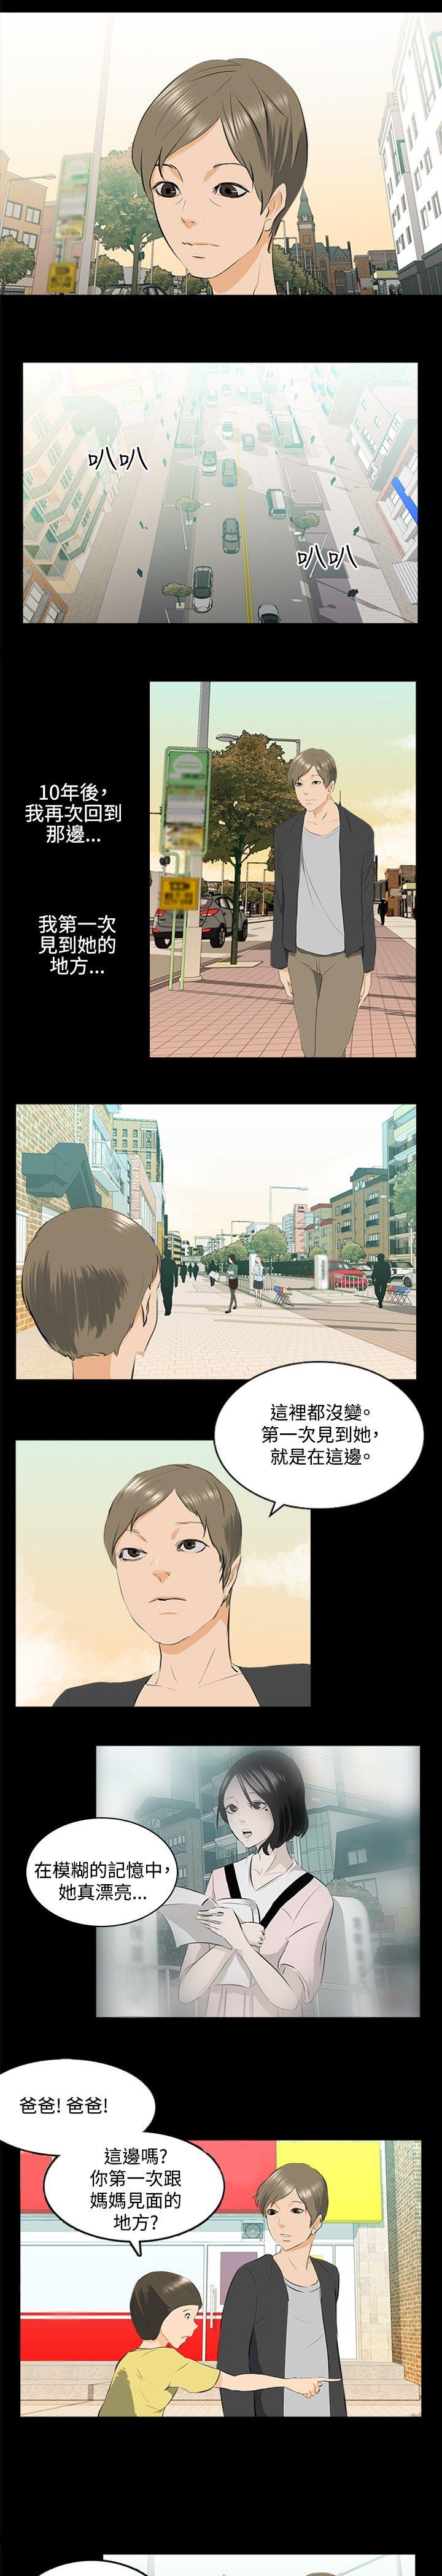 韩国污漫画 秘密Story 邪教之女(下) 8